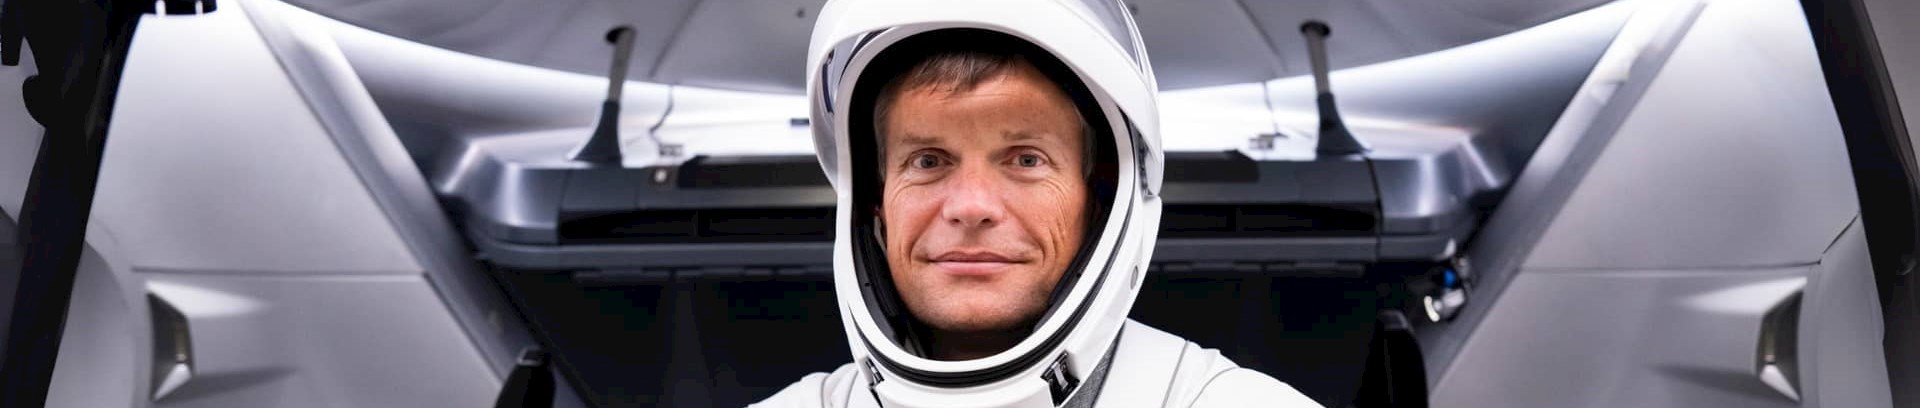 Andreas Mogensen, kreditering: SpaceX, foredrag om HUGINN-missionen med Ole J. Knudsen